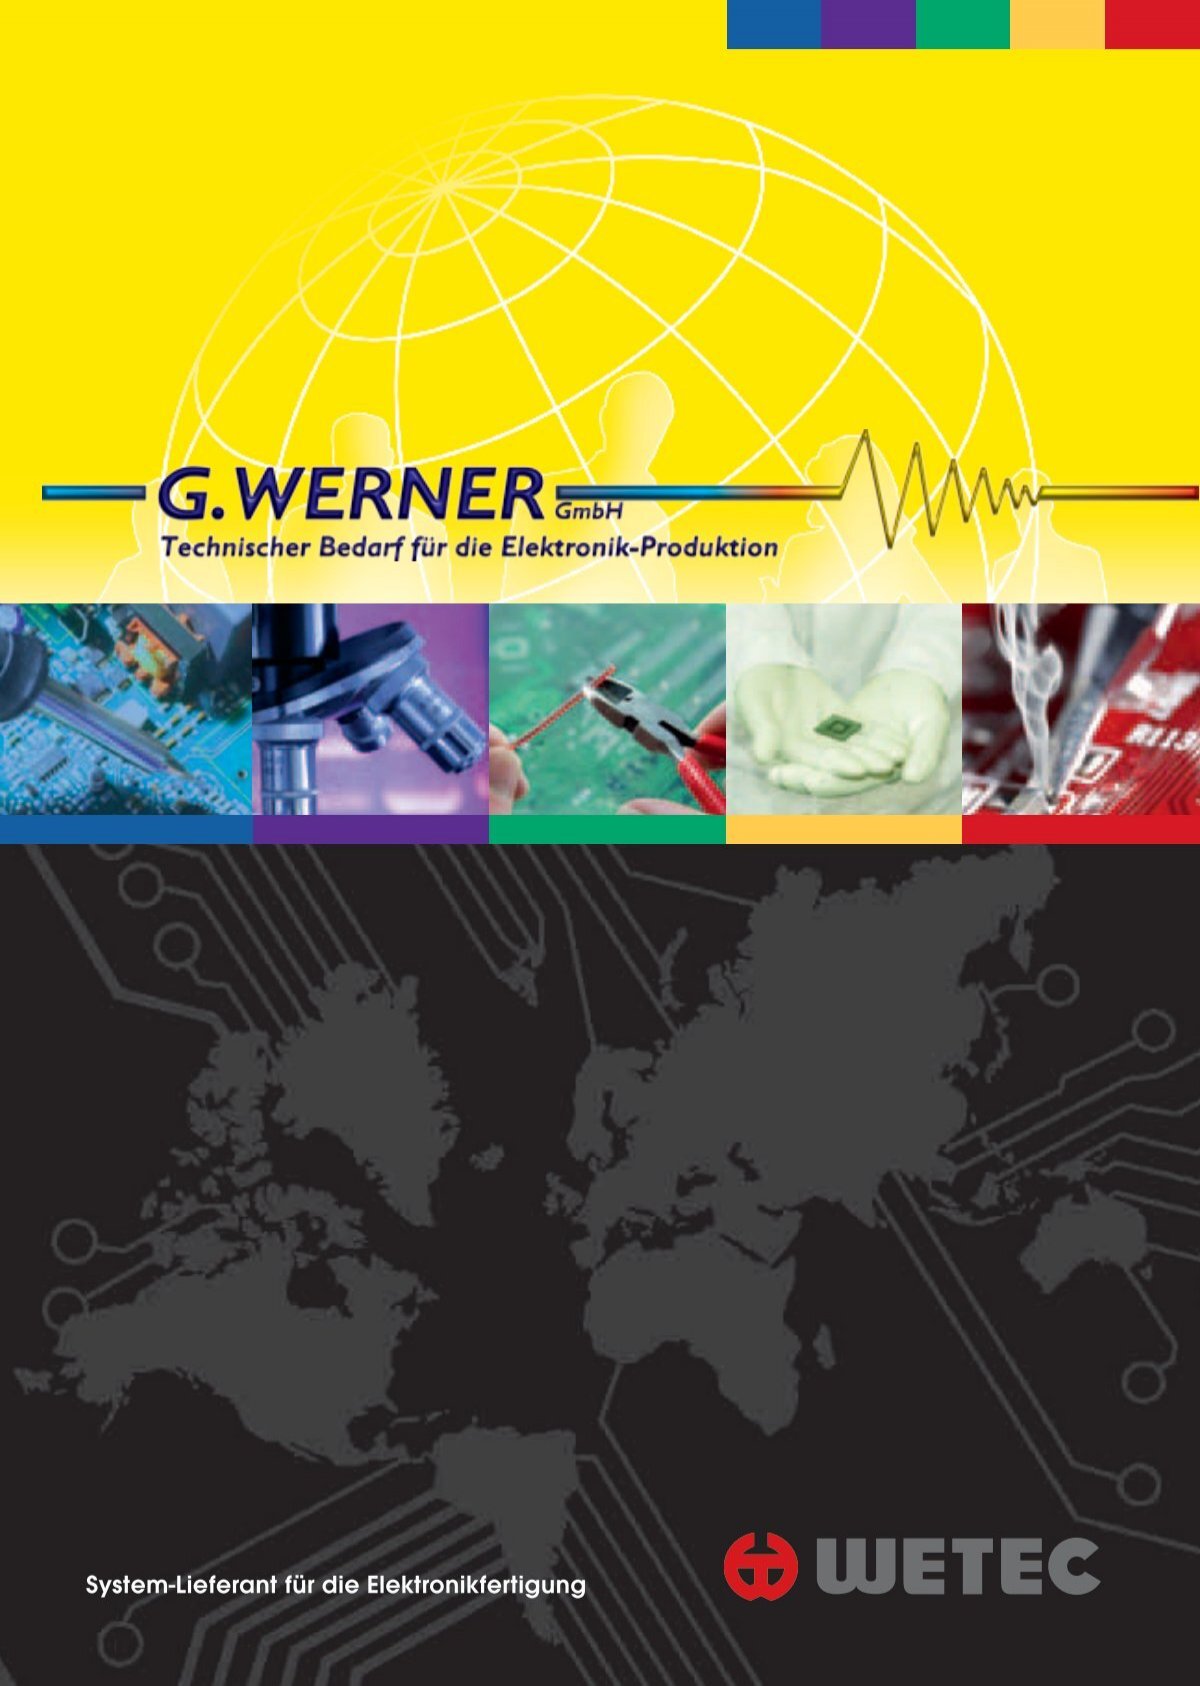 wetec 2012/13 - G.Werner GmbH